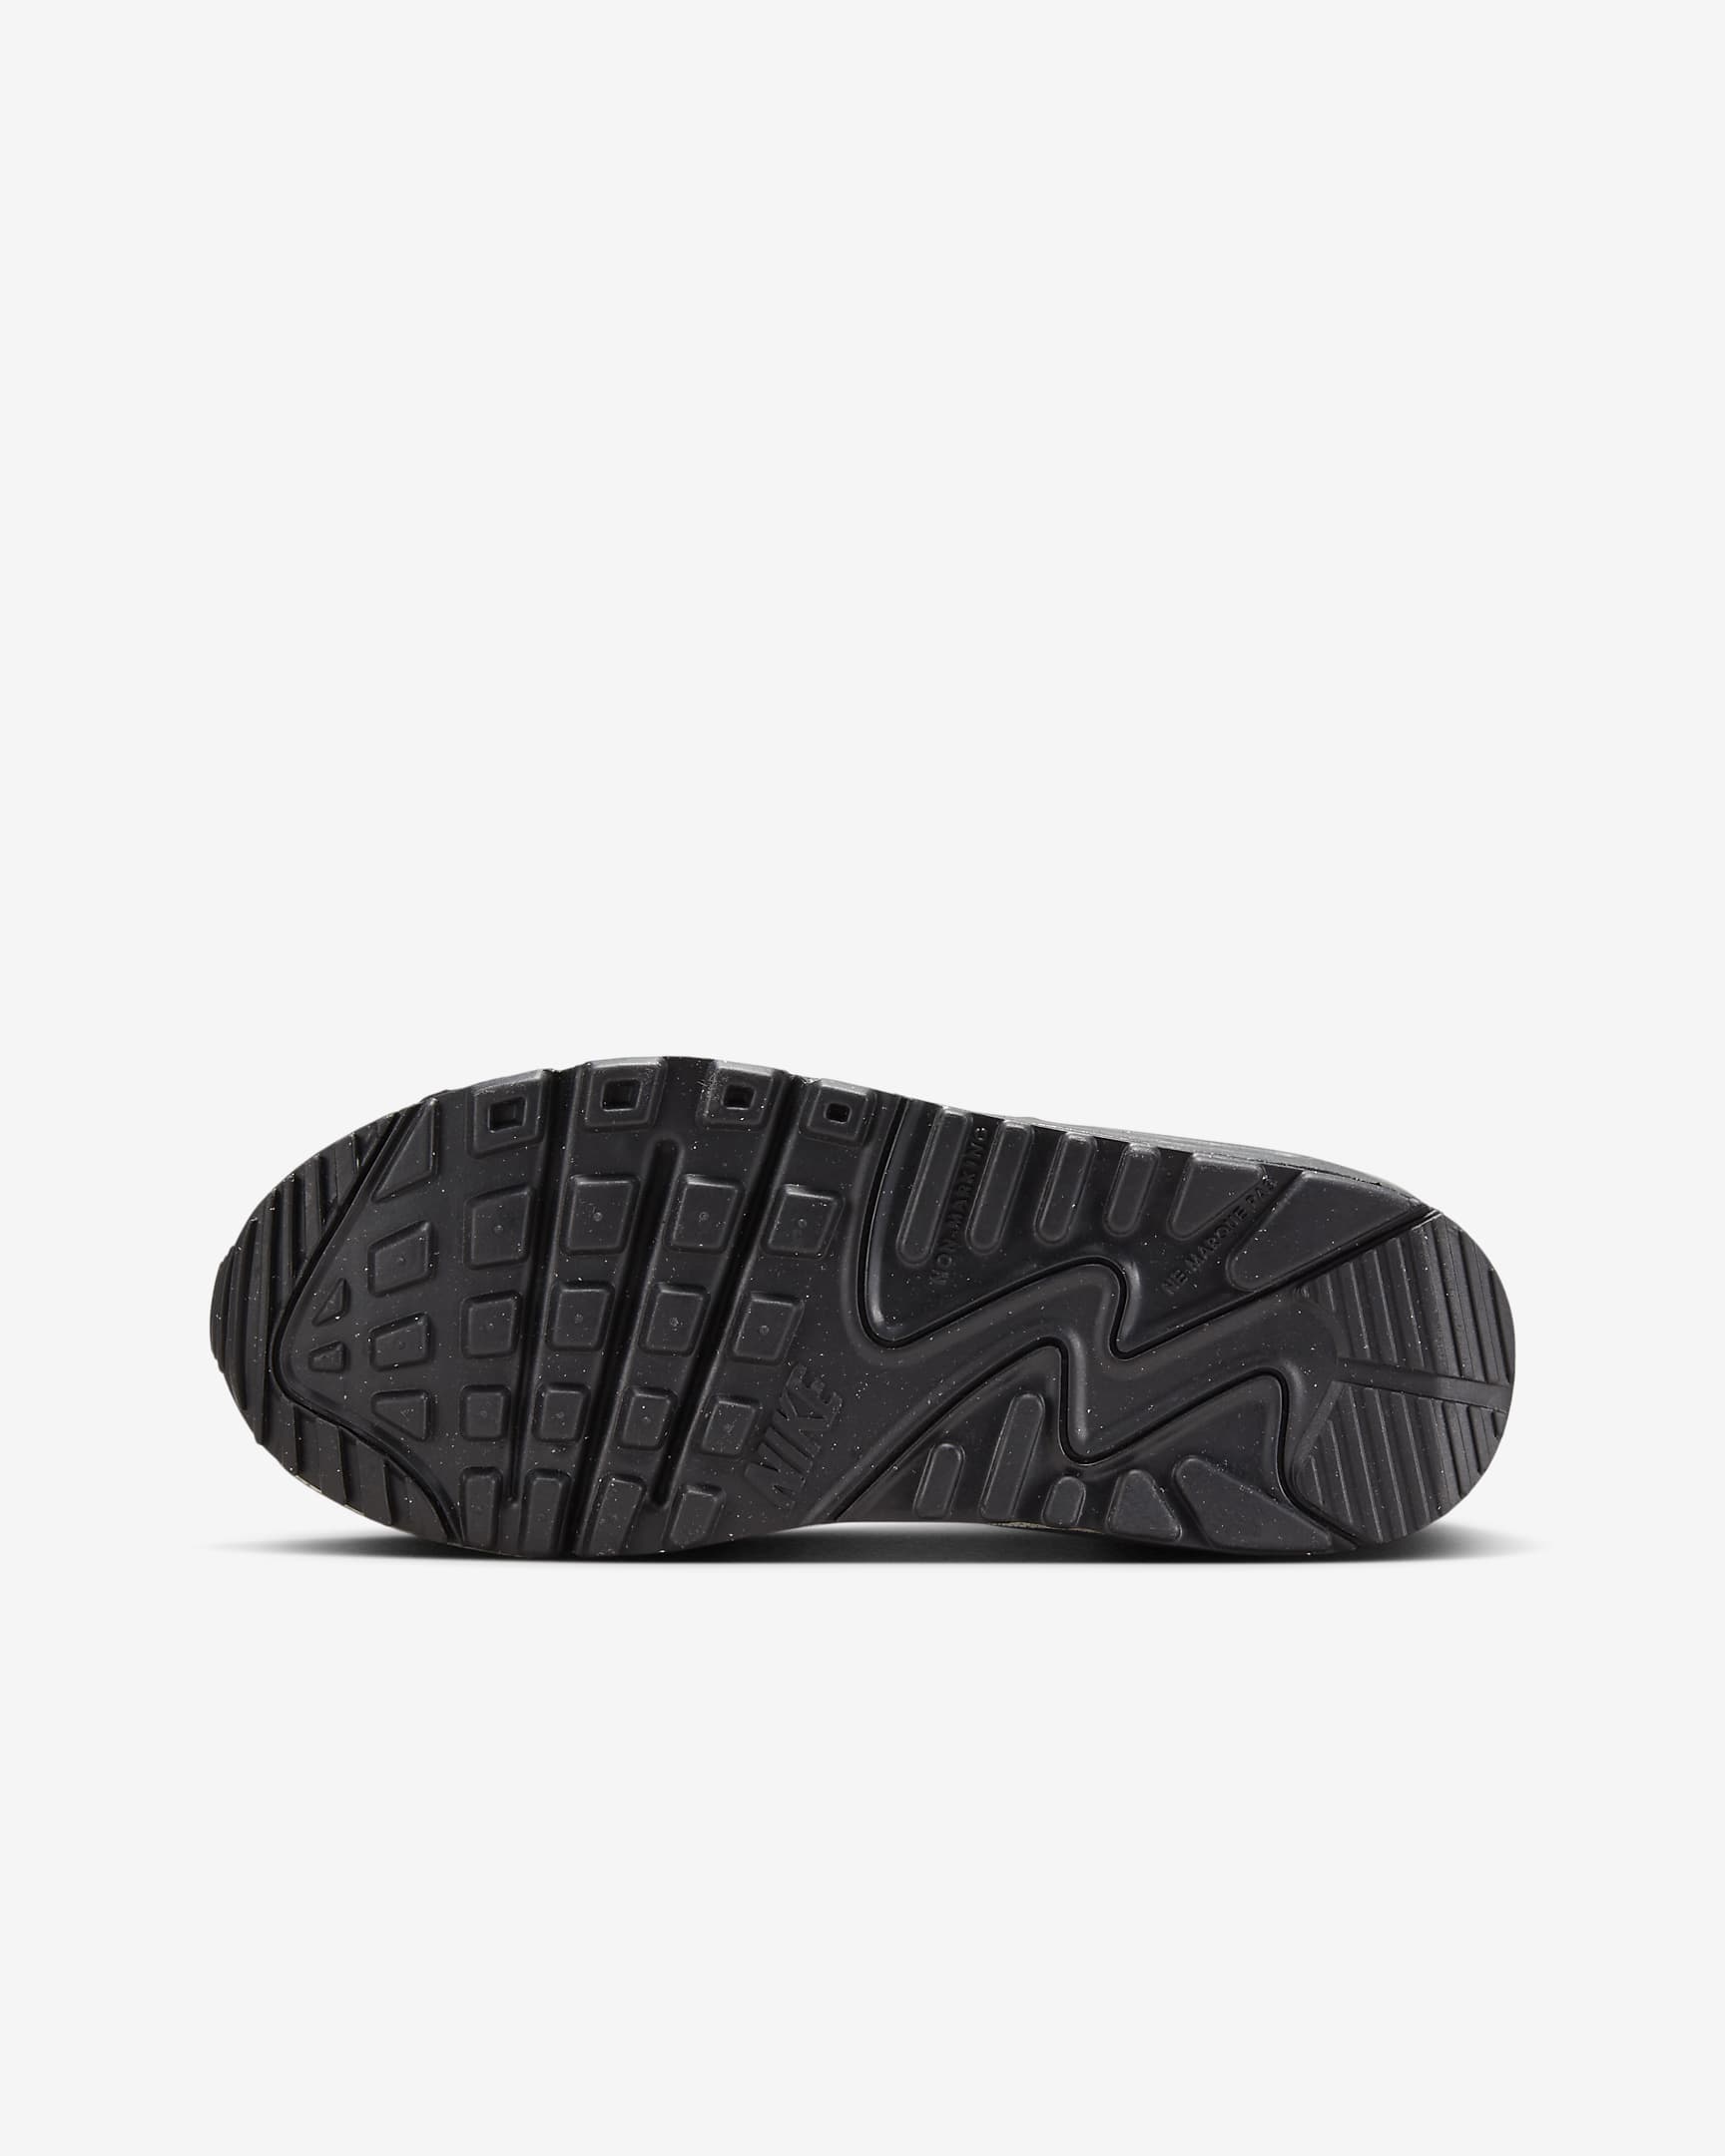 Nike Air Max 90 Schuhe für ältere Kinder - Schwarz/University Gold/Dark Smoke Grey/Weiß